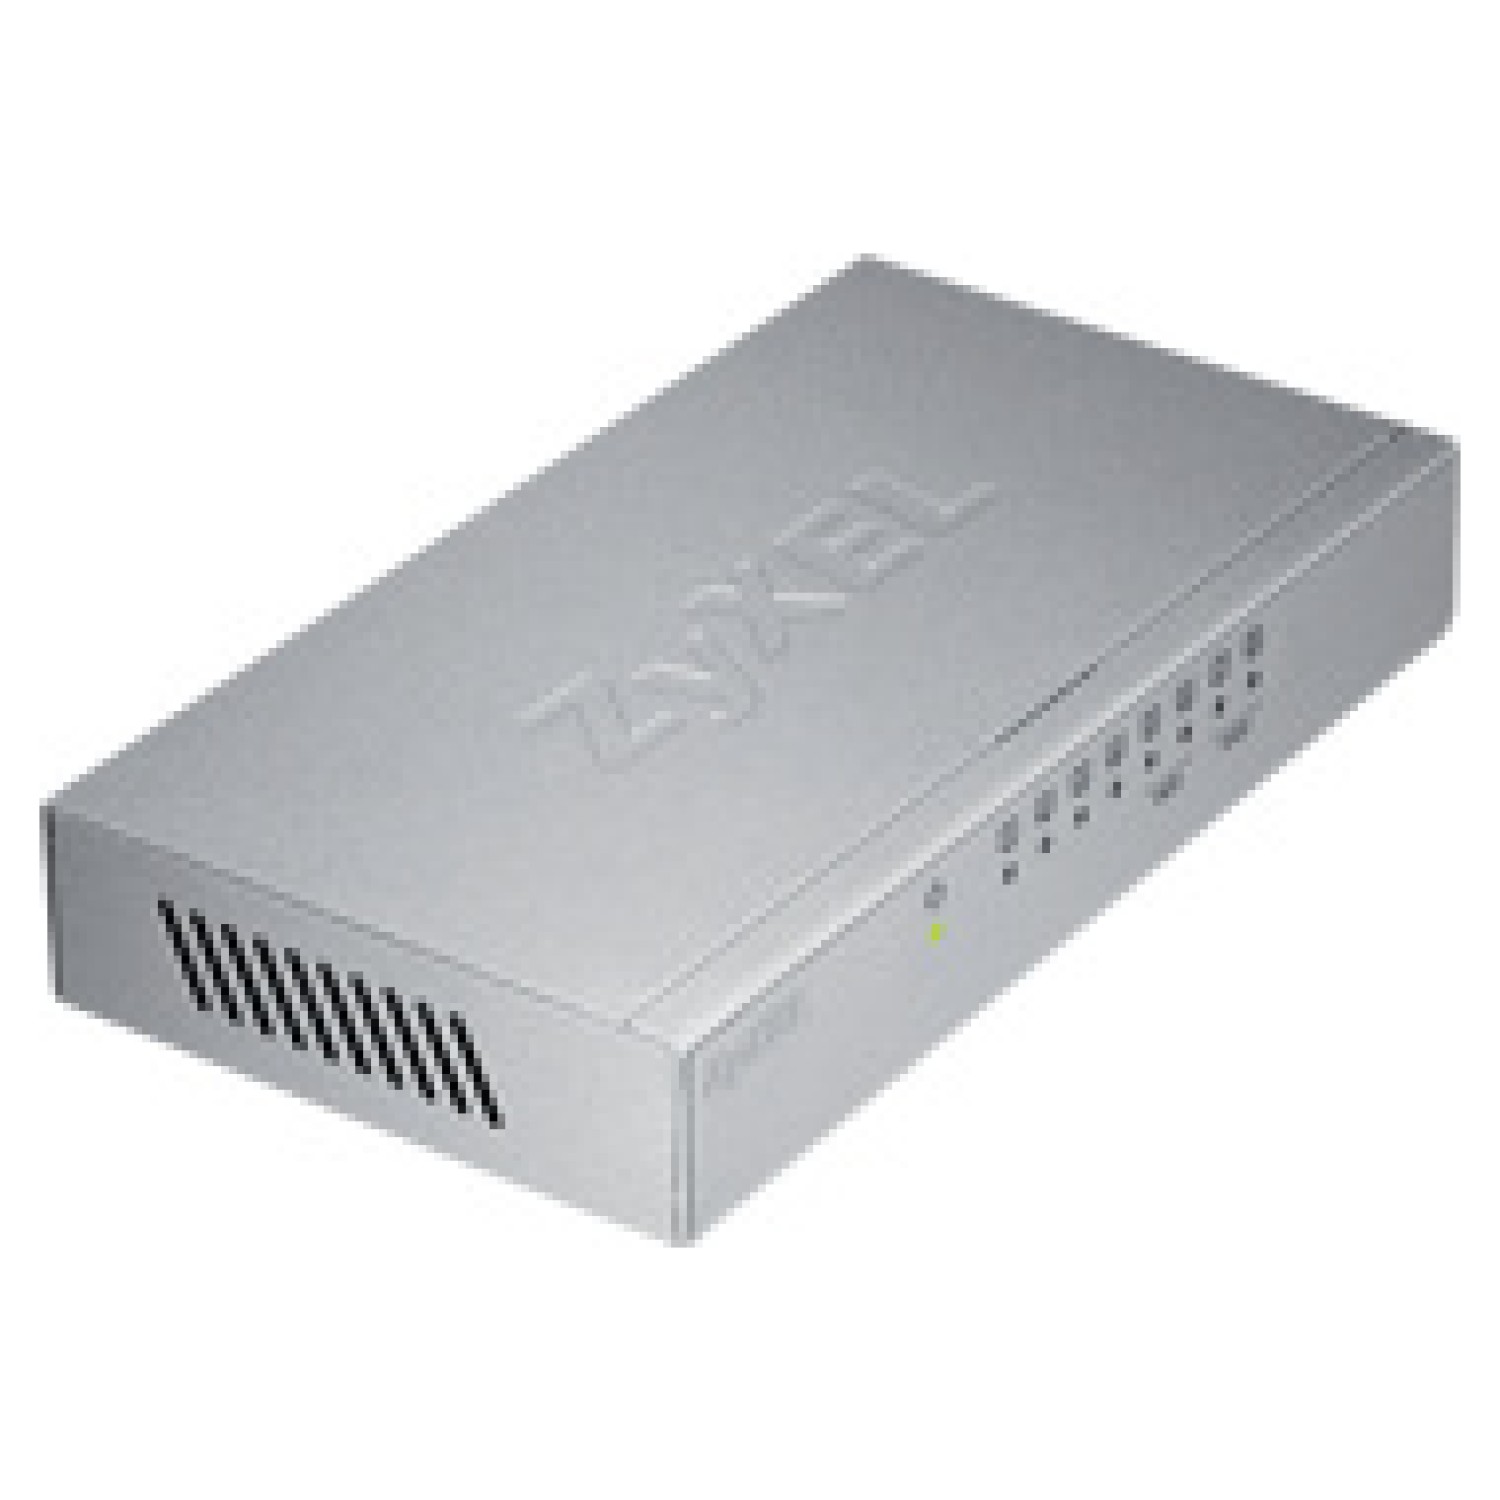 ZYXEL GS-108B V3 8-Port Desktop Gigabit